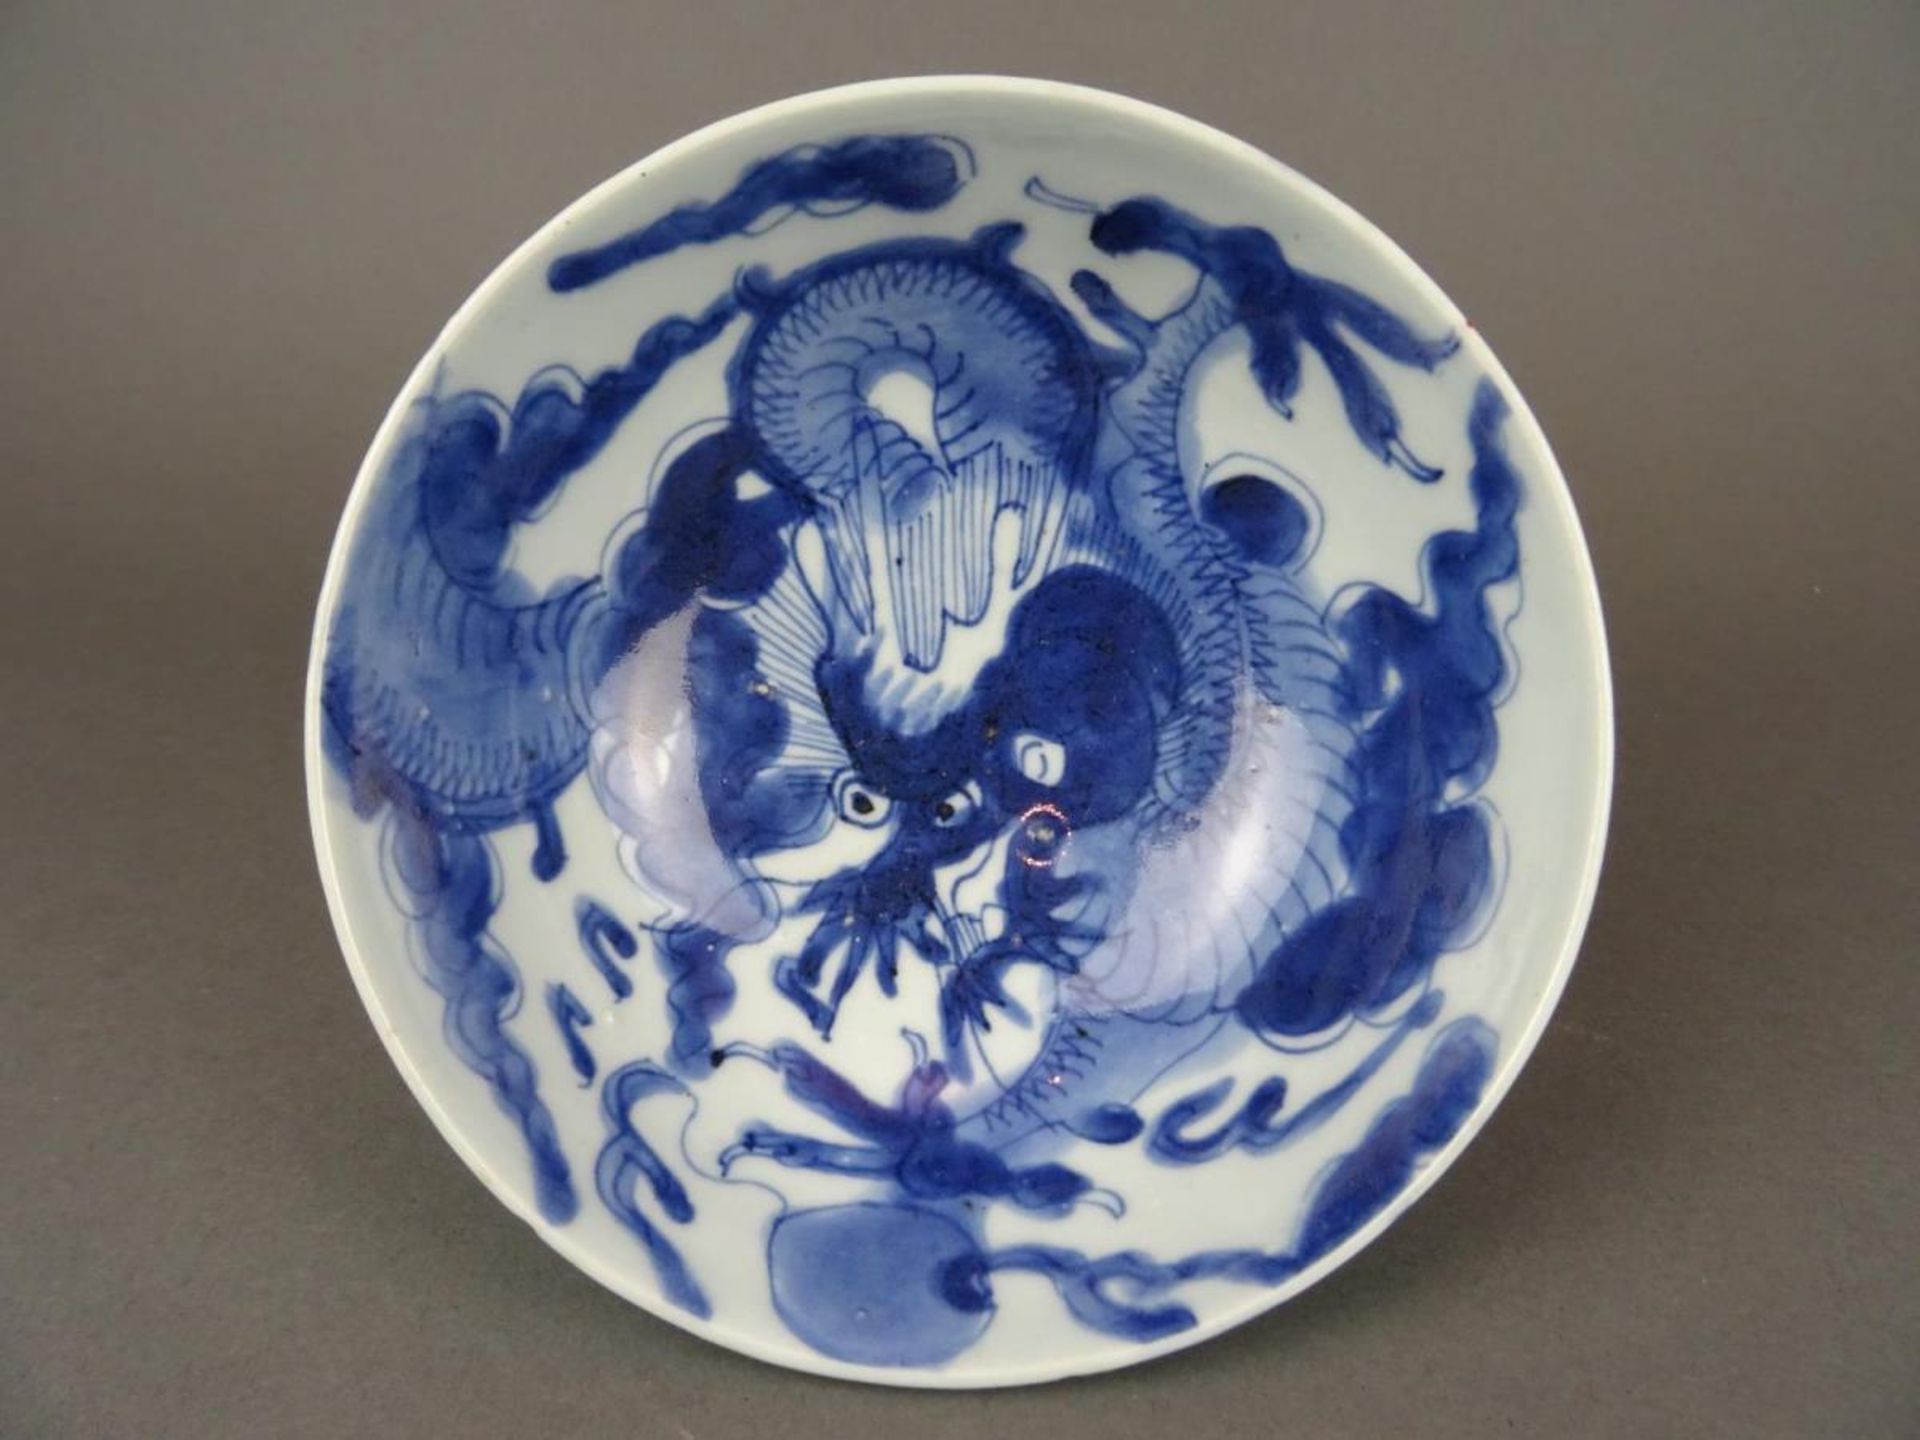 Chinese porcelain B/W bowl - dragon